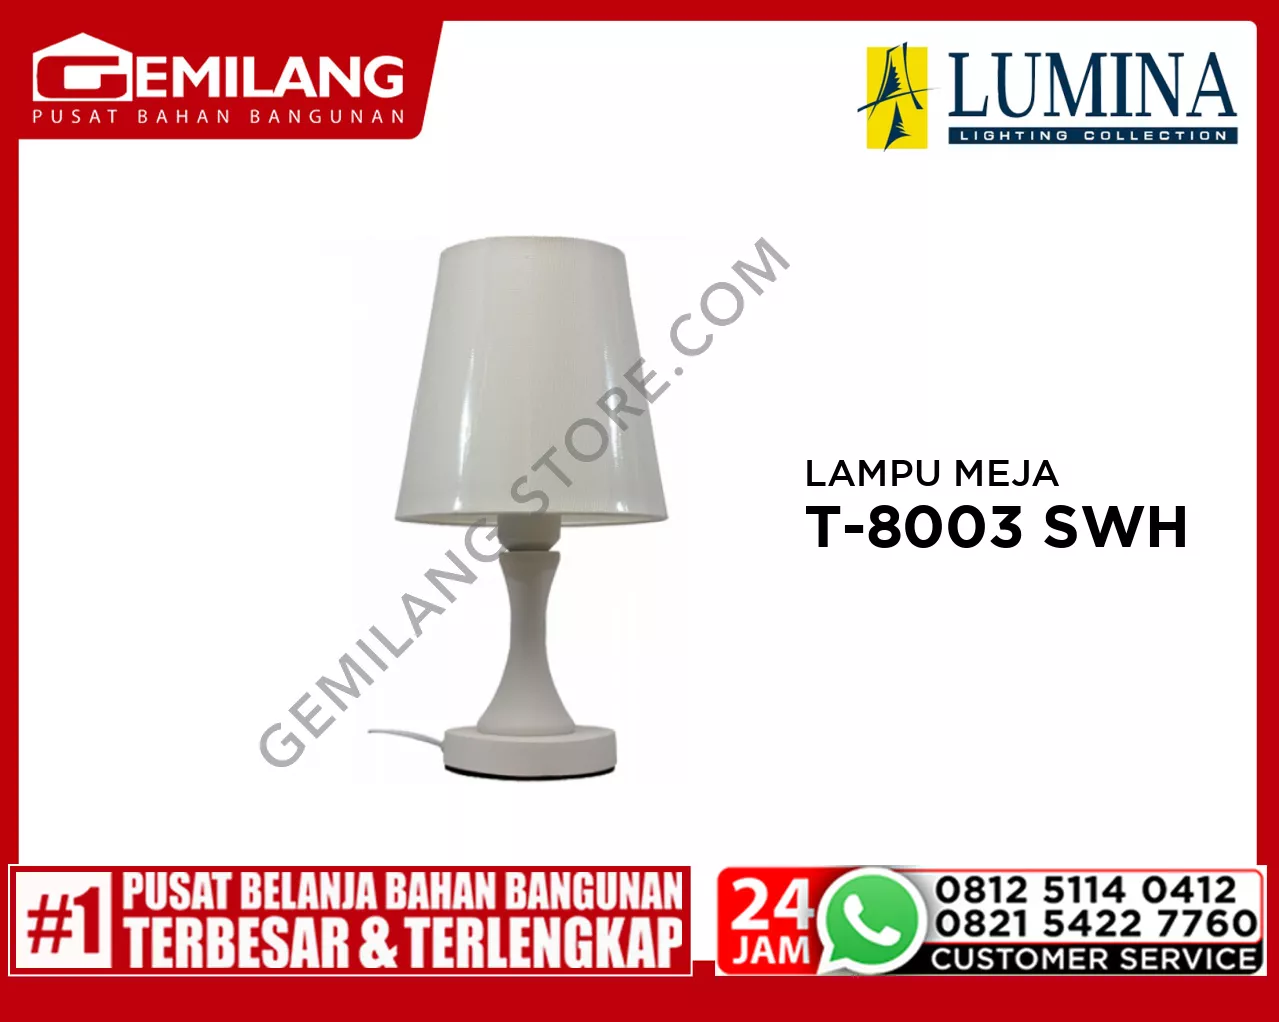 LAMPU MEJA T-8003 SWH